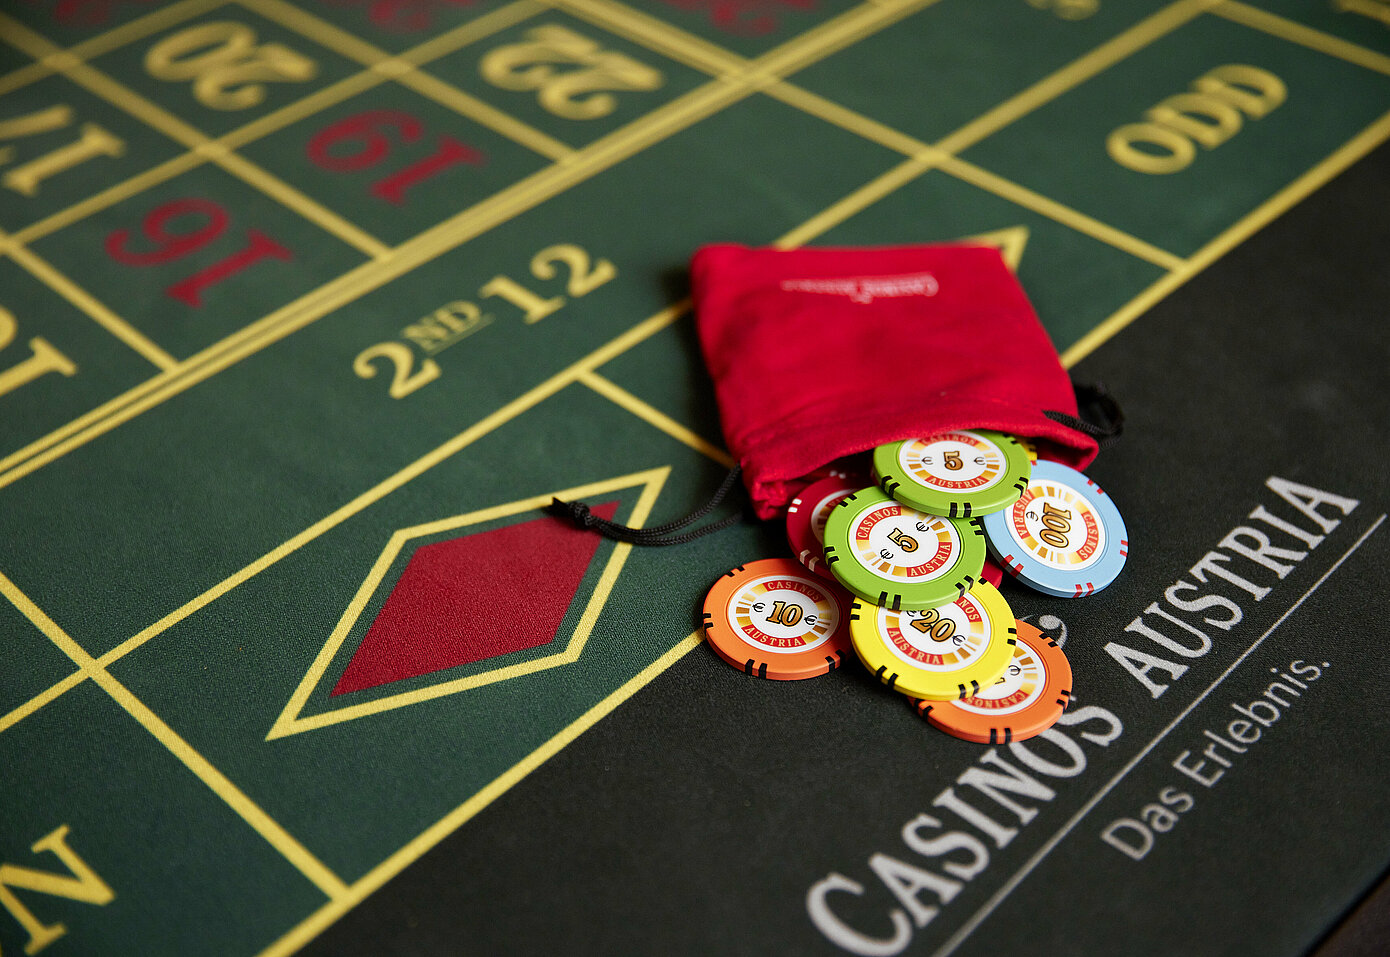 Understanding Casino